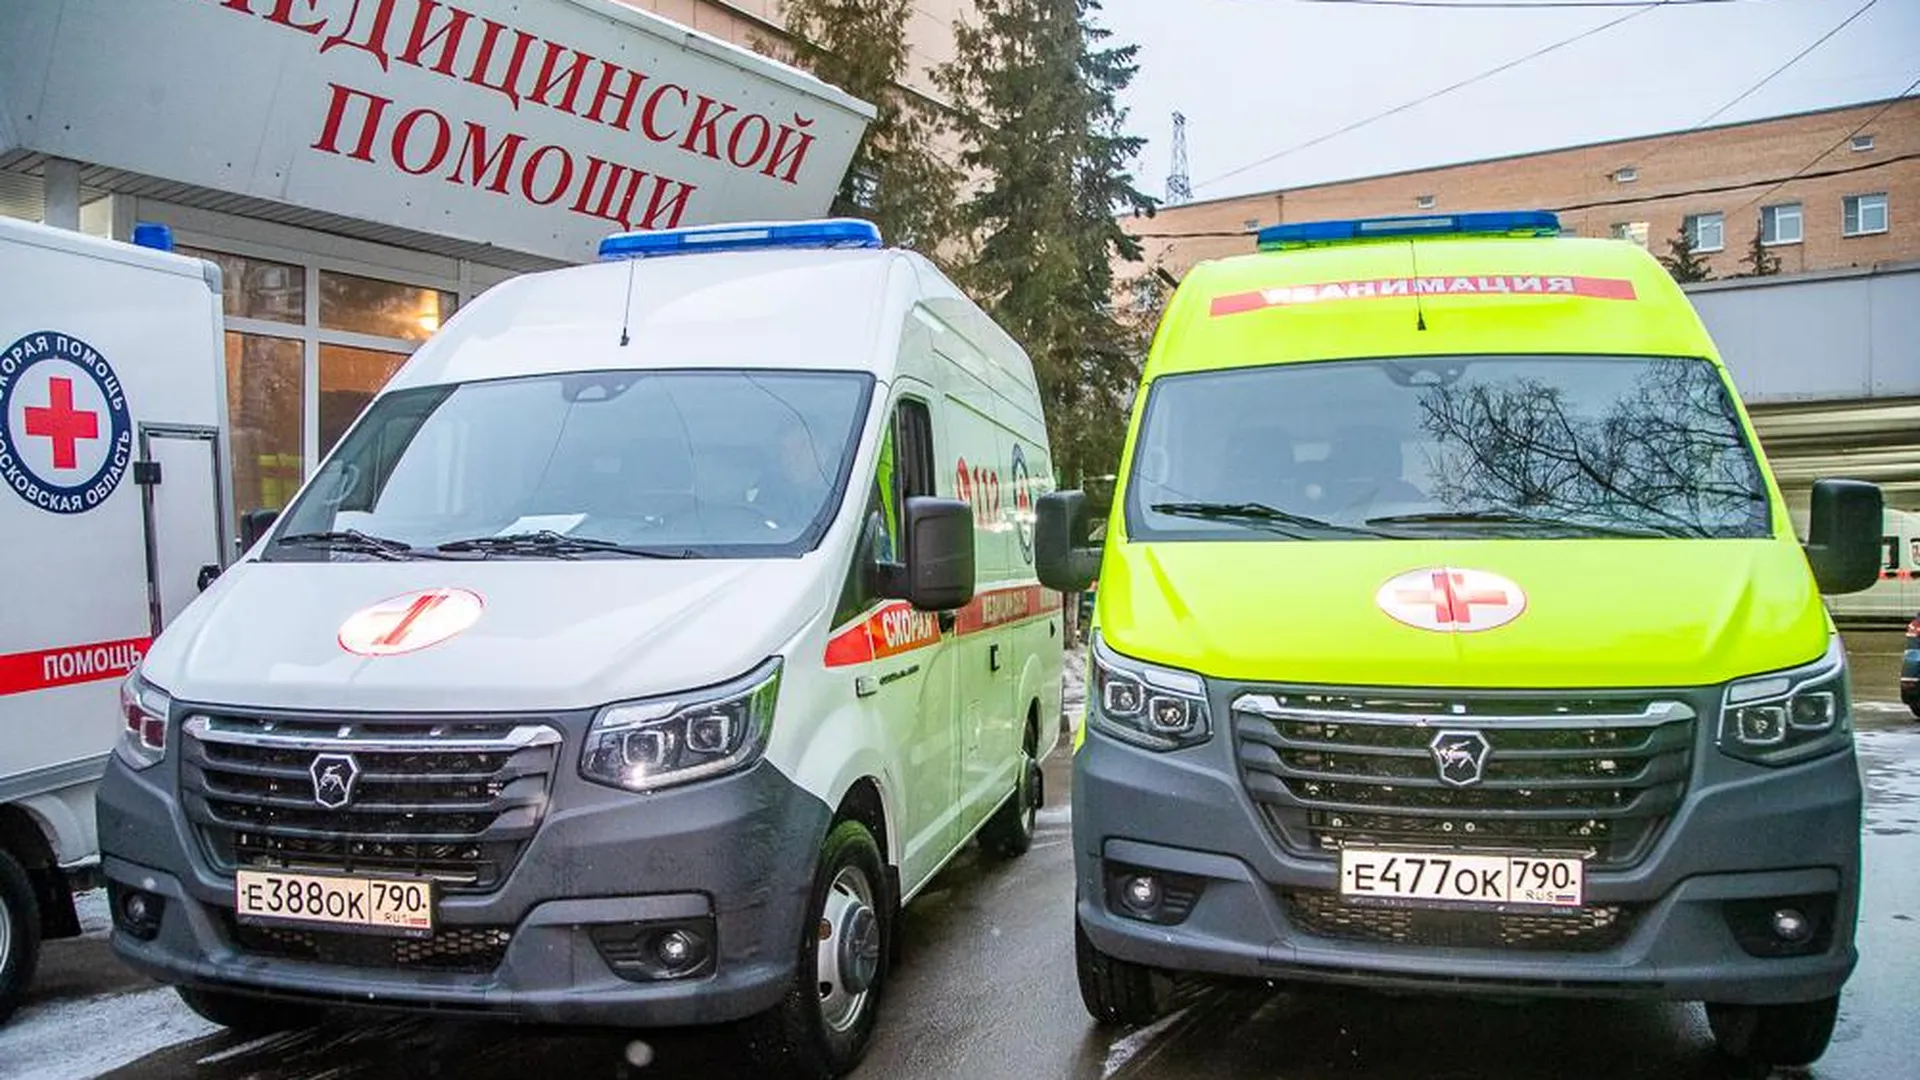 Ведущий программы «Такси» Куличков попал в больницу Подмосковья с инсультом